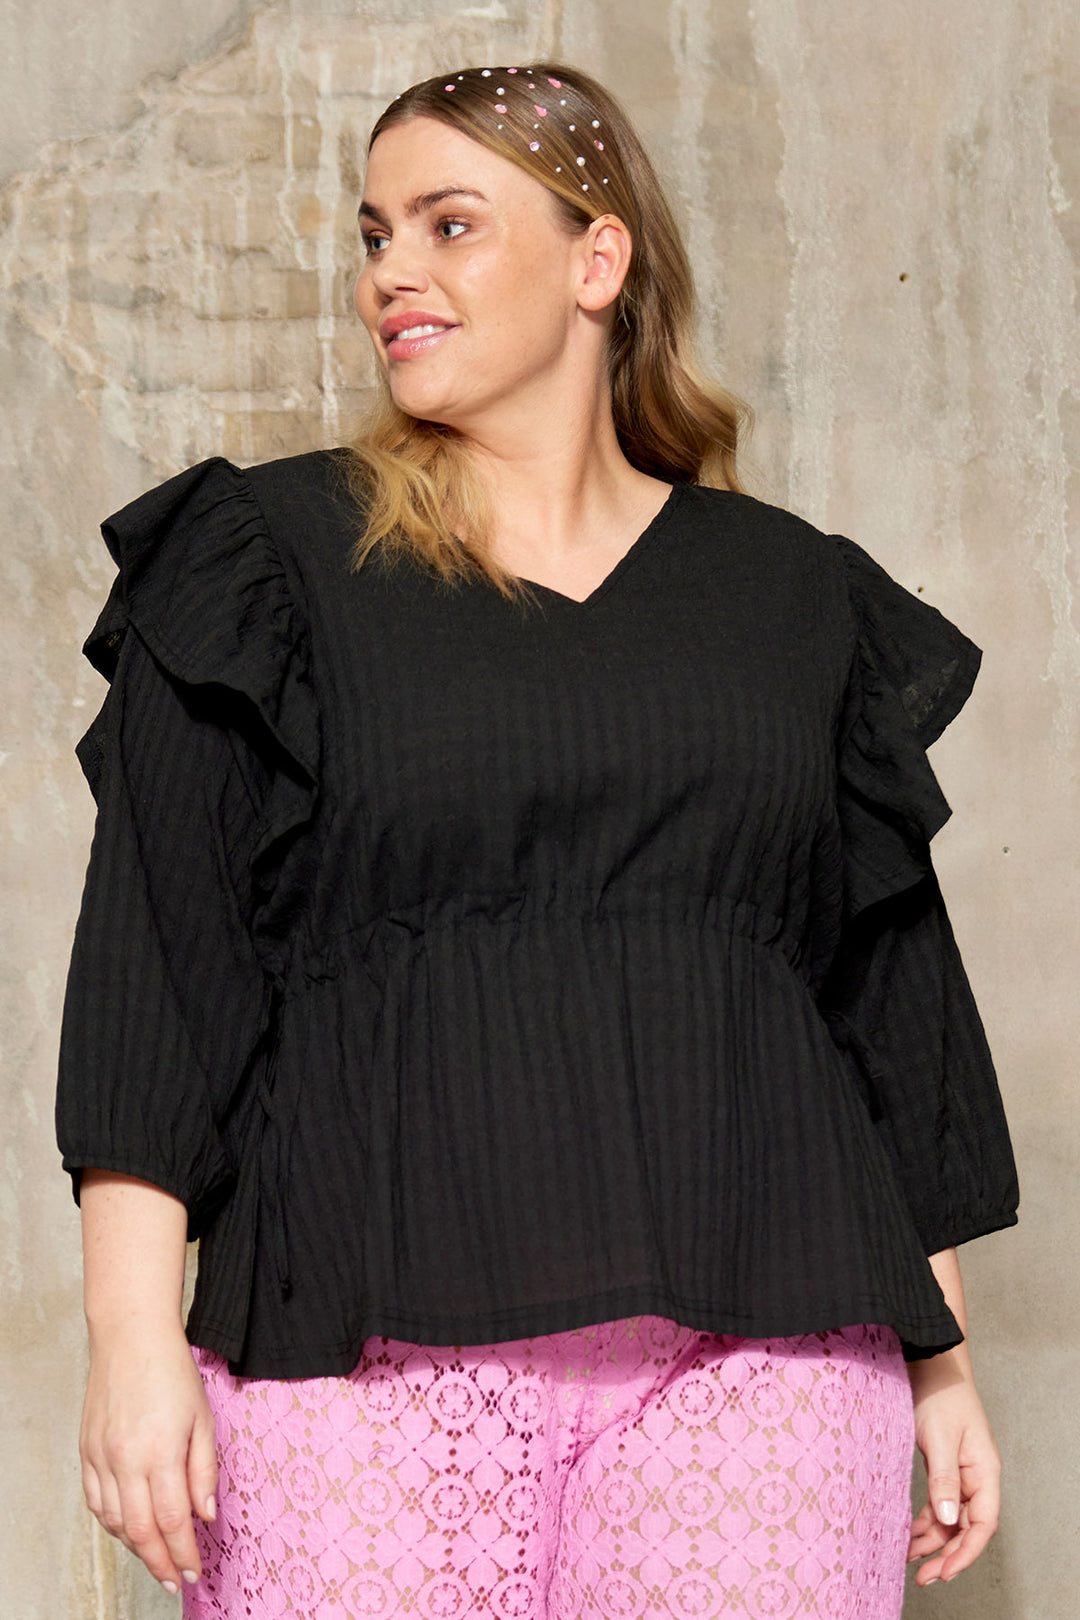 Sort bluse med justerbart bindebånd: Stil og komfort i én | Shop plus size tøj til kvinder, der elsker deres kurver | Anyday